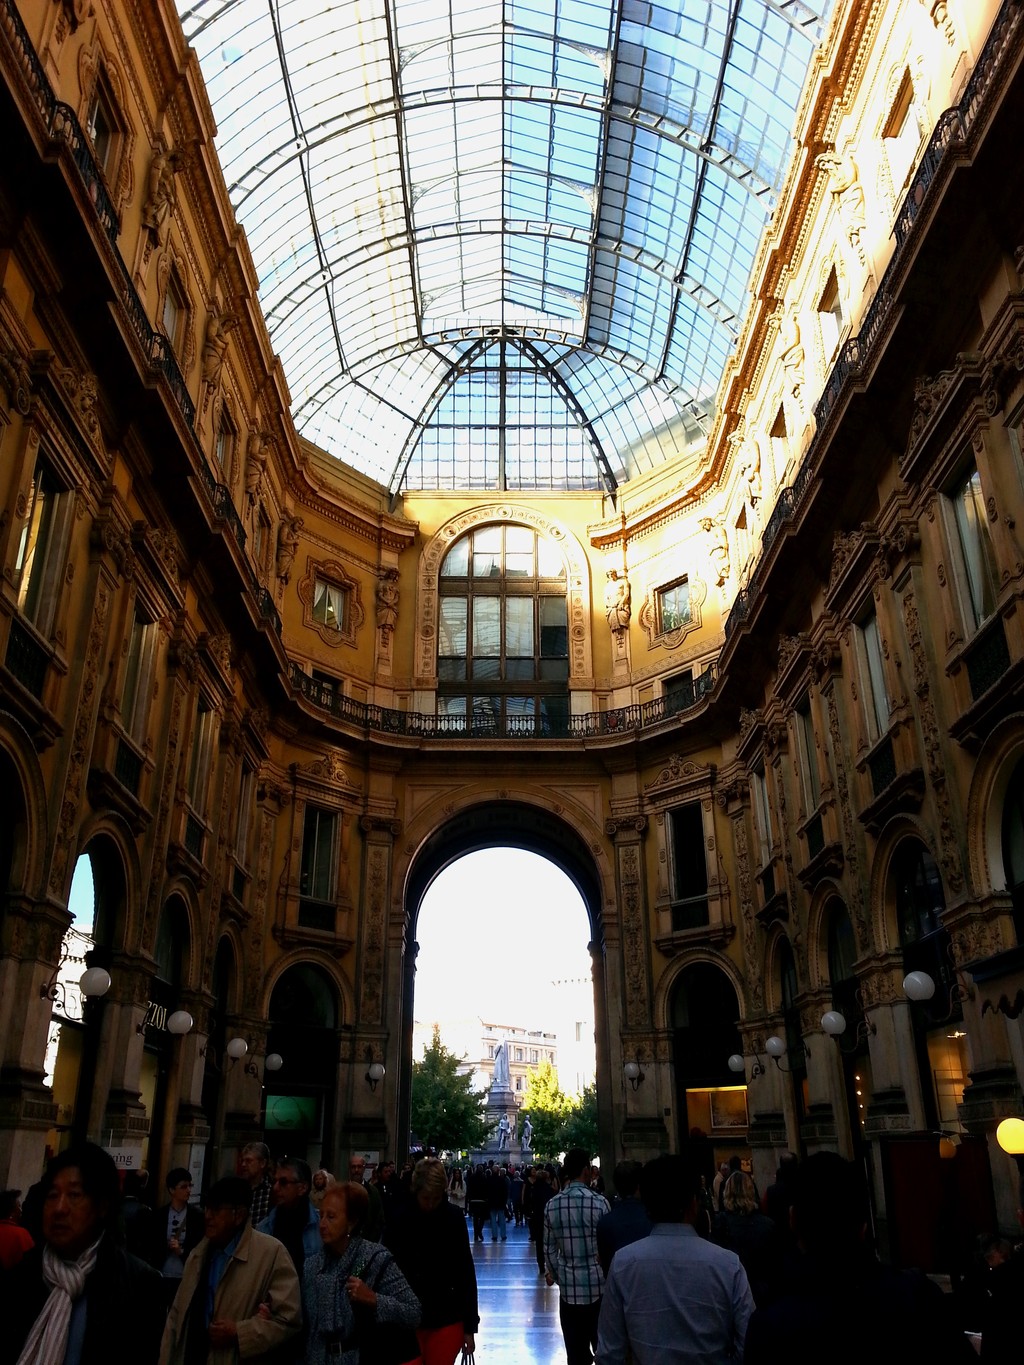 Galleria Vittorio Emanuele II at Night in Milan, Italy